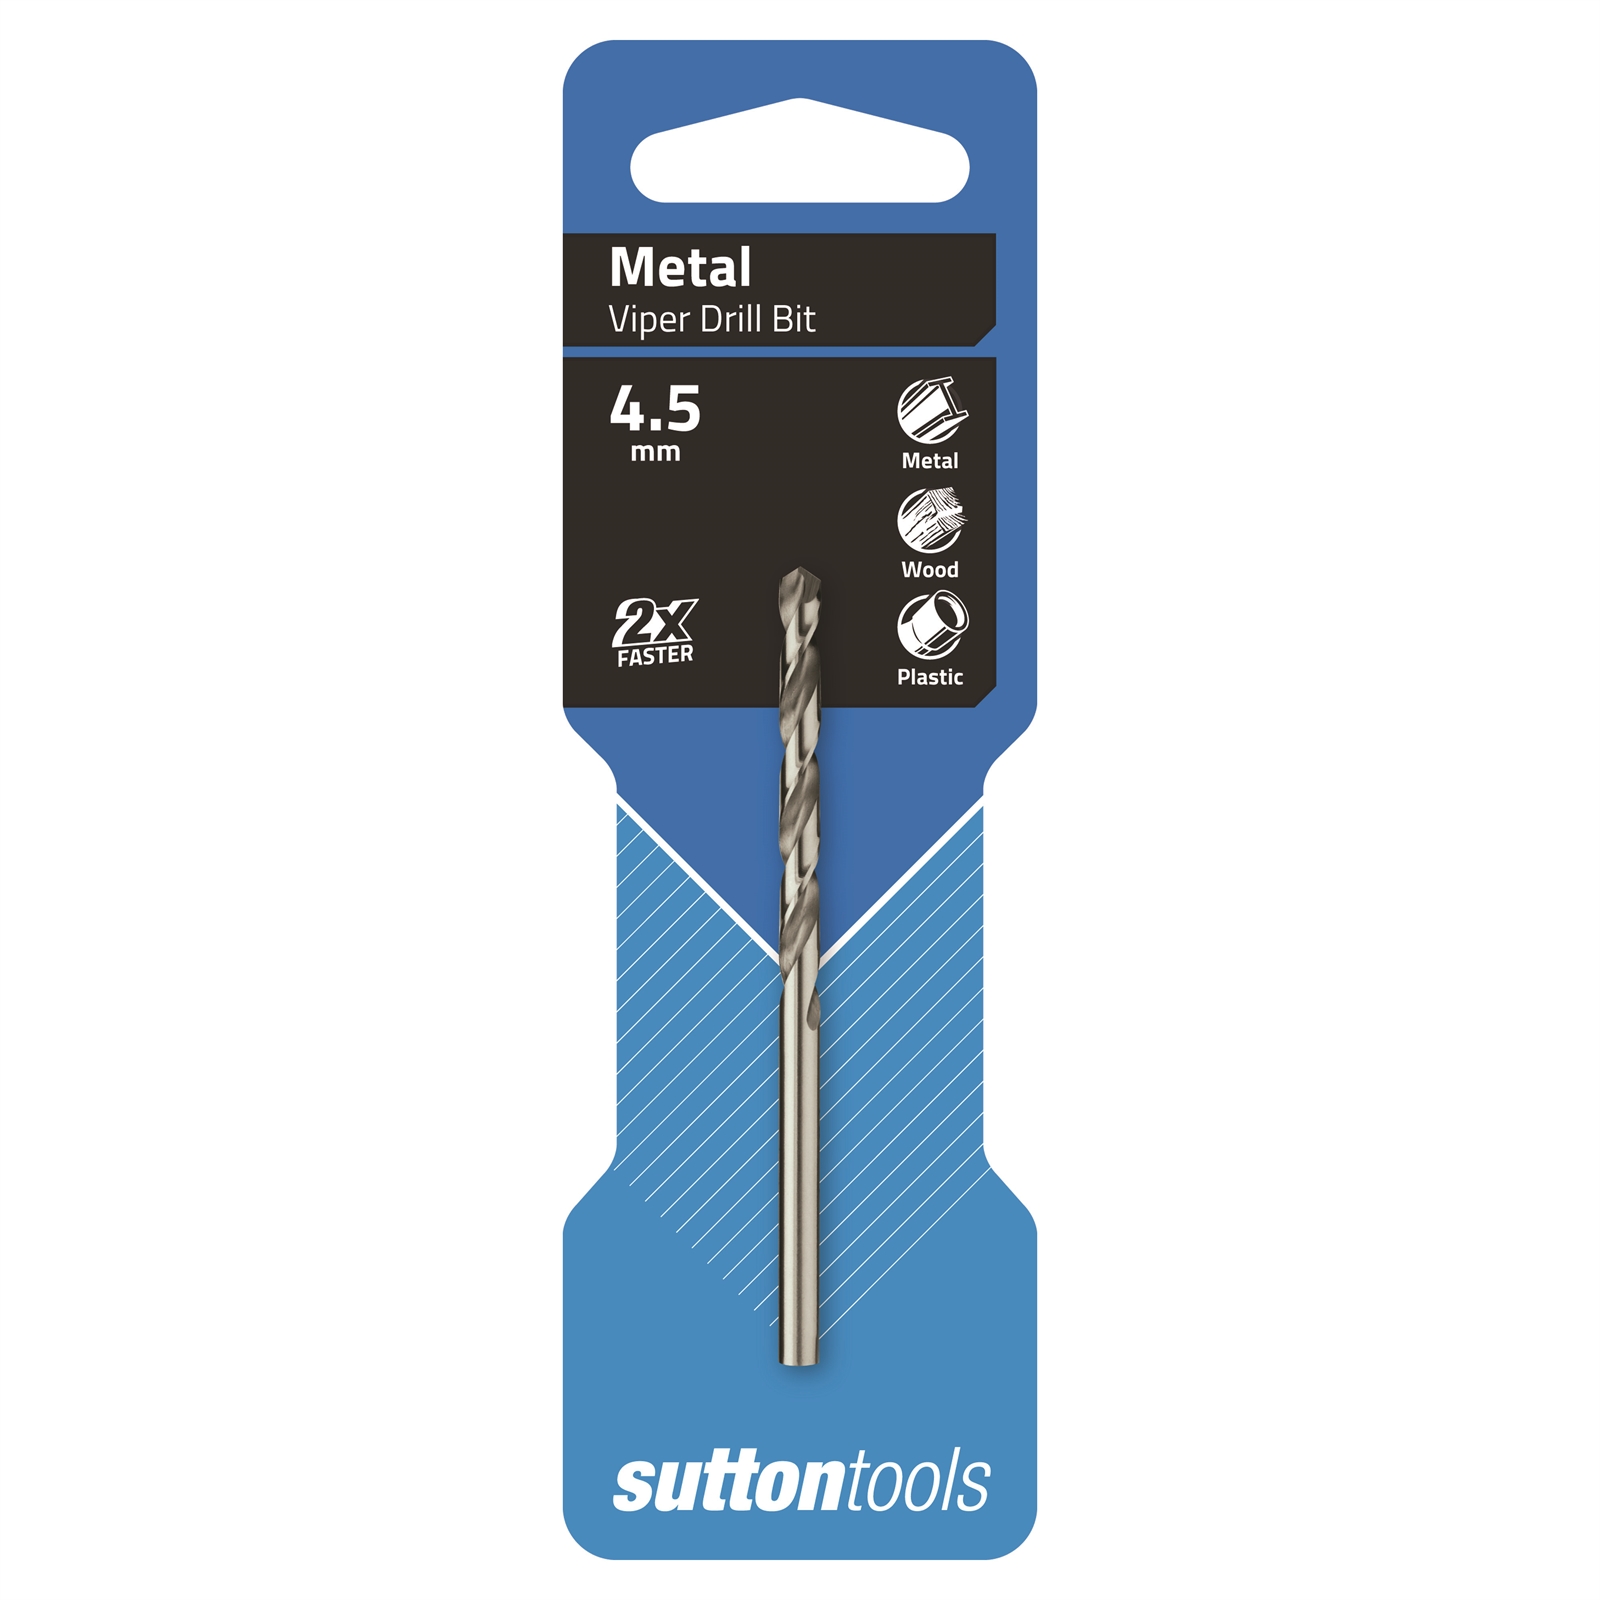 Sutton Tools 4.5mm HSS Metric Viper Drill Bit